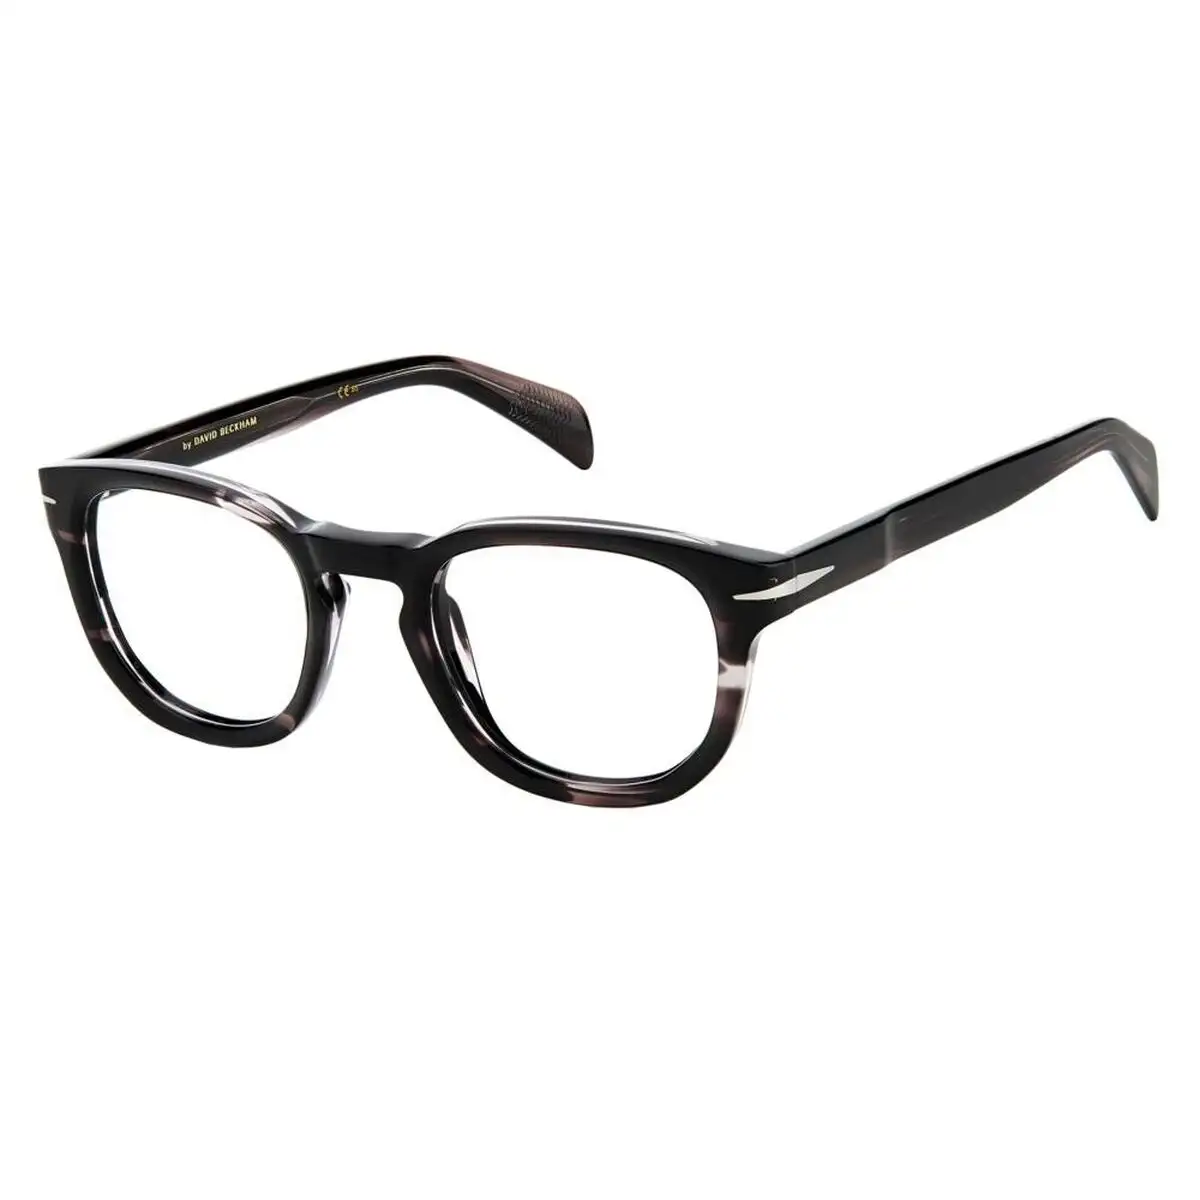 Monture de lunettes homme david beckham db 7050_7204. DIAYTAR SENEGAL - Là où Chaque Produit Évoque une Émotion. Parcourez notre catalogue et choisissez des articles qui vous touchent et qui enrichissent votre expérience.